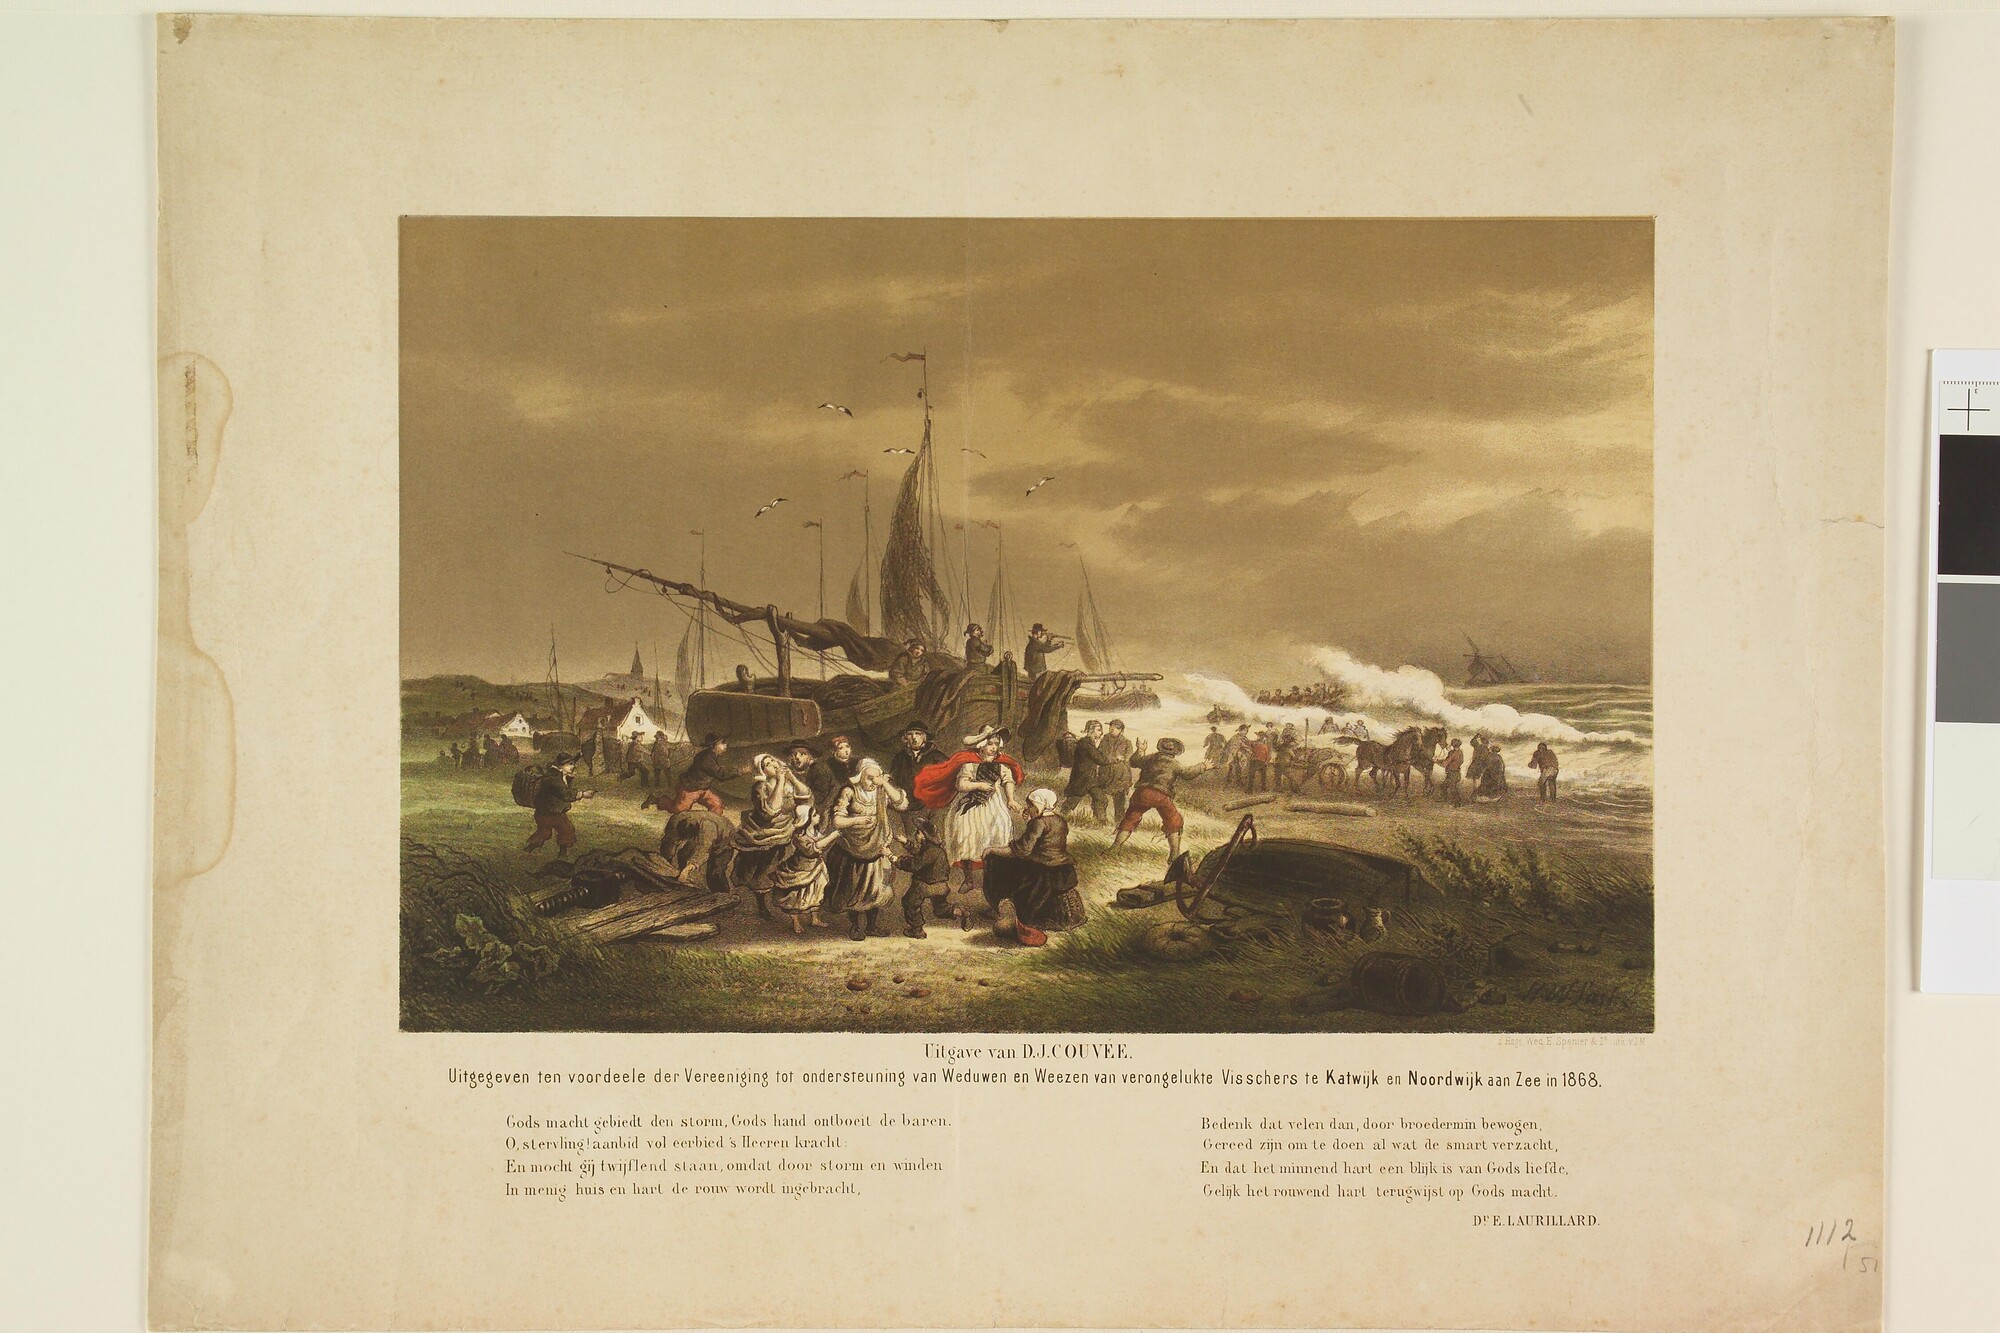 A.3693; Gedenkplaat, uitgegeven ter ondersteuning van de weduwen en wezen van verongelukte vissers te Katwijk en Noordwijk aan Zee, 1868; prent